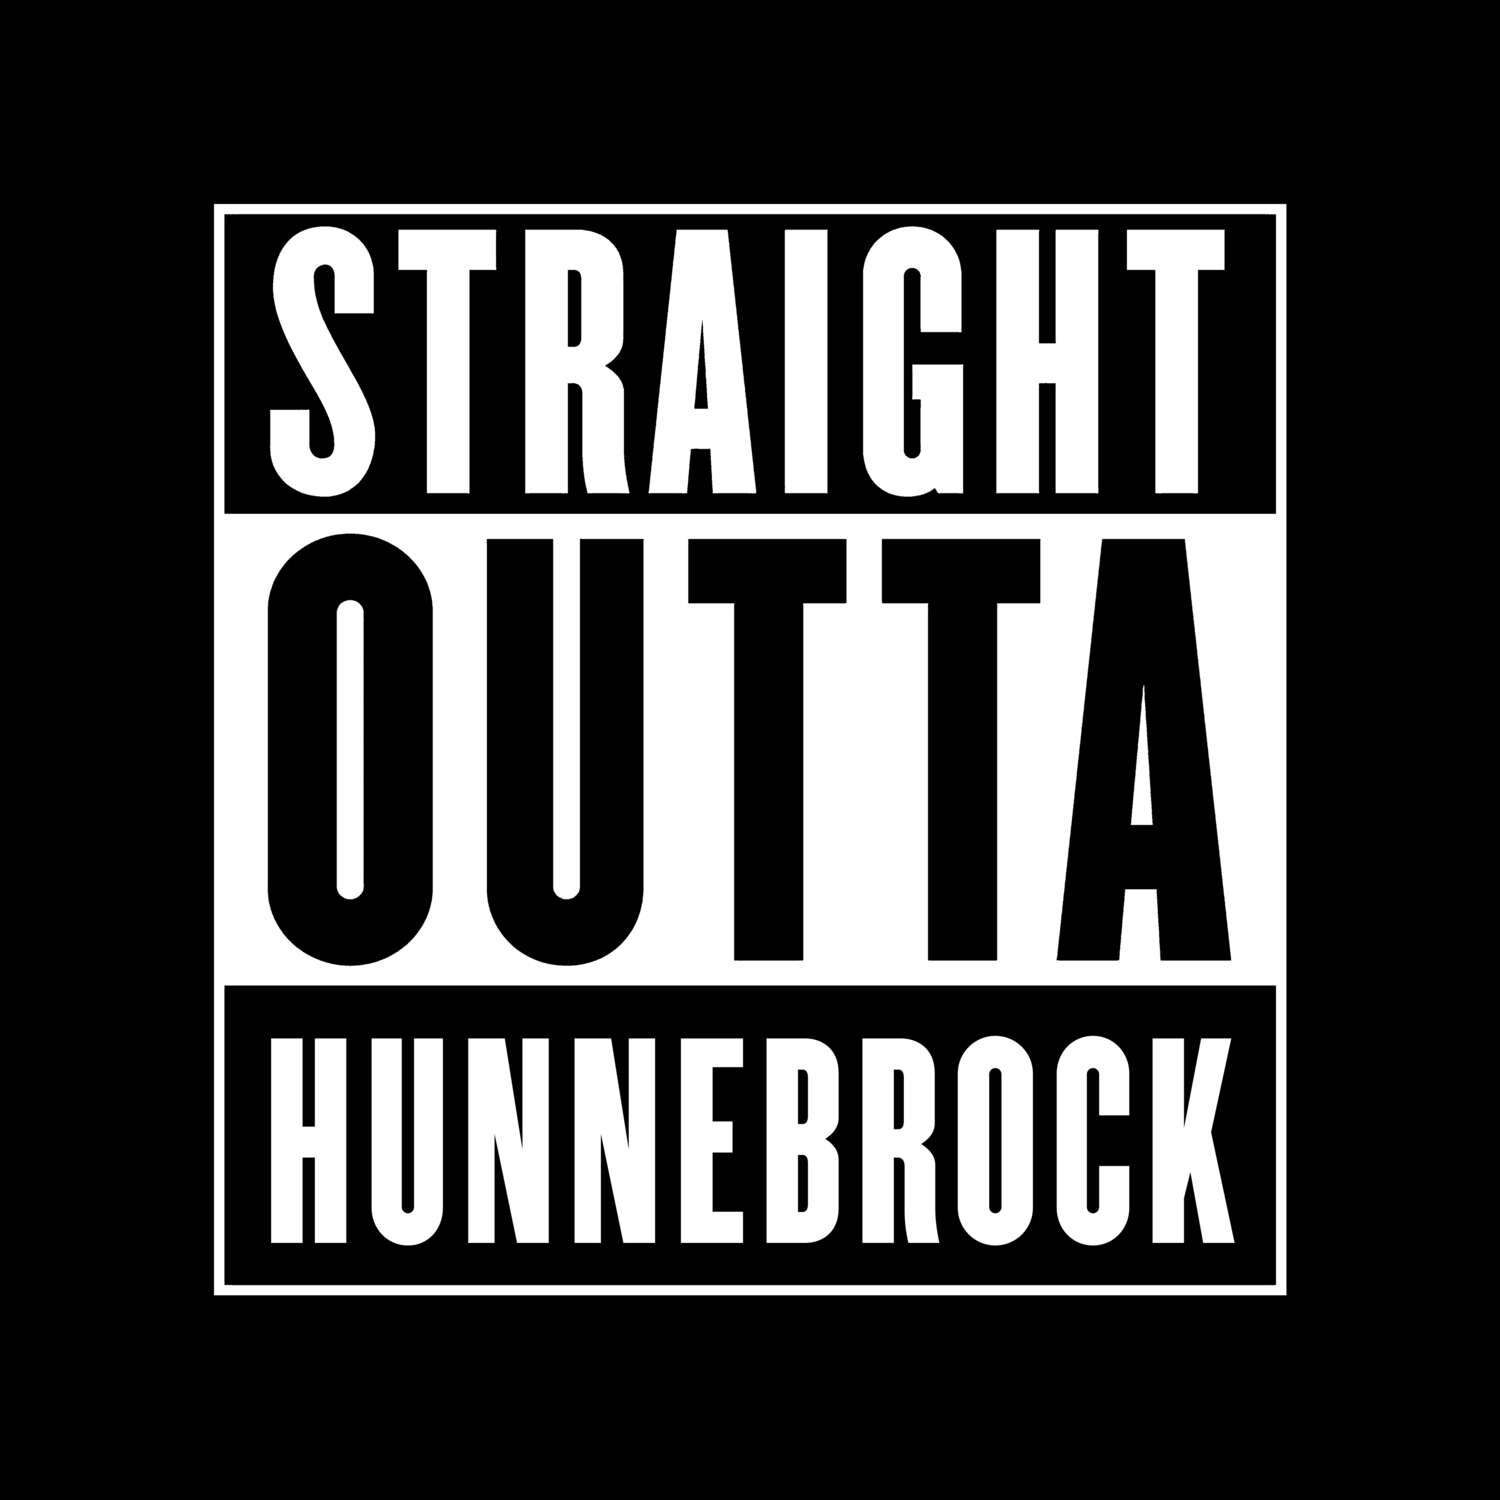 Hunnebrock T-Shirt »Straight Outta«